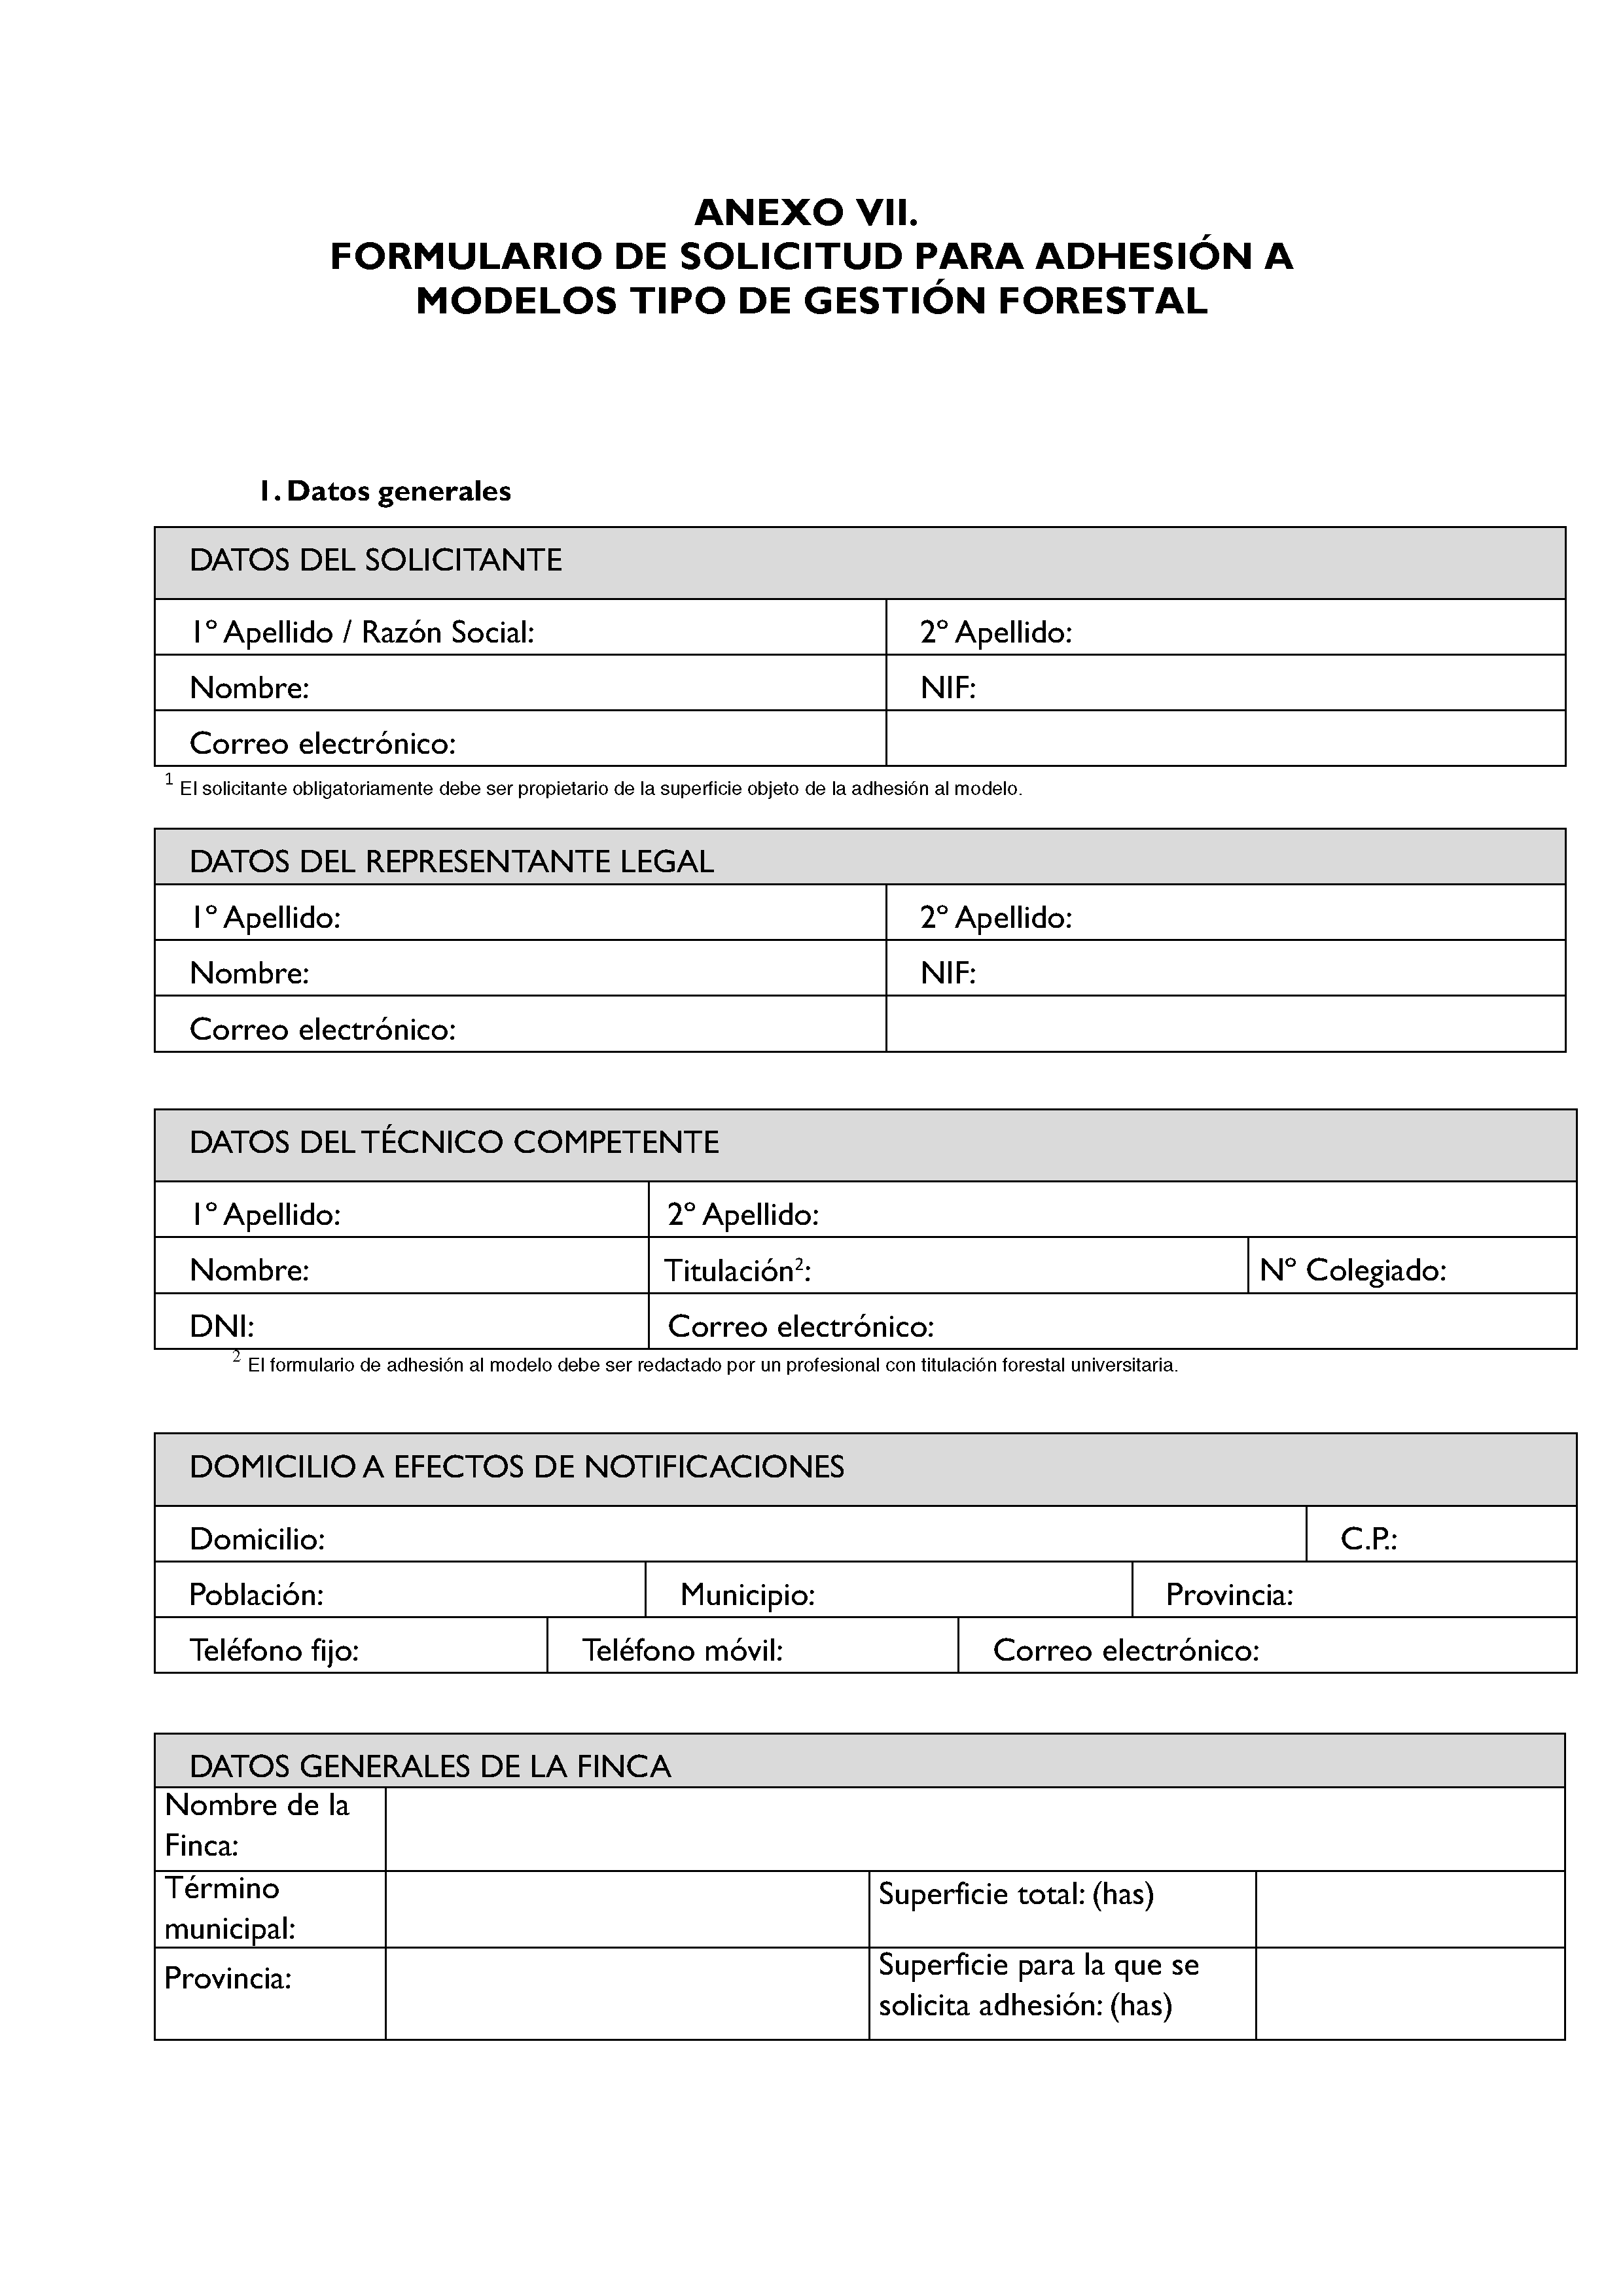 ANEXO - INSTRUCCIONES DE ORDENACIÓN DE LOS PROYECTOS DE ORDENACIÓN DE MONTES Pag 143